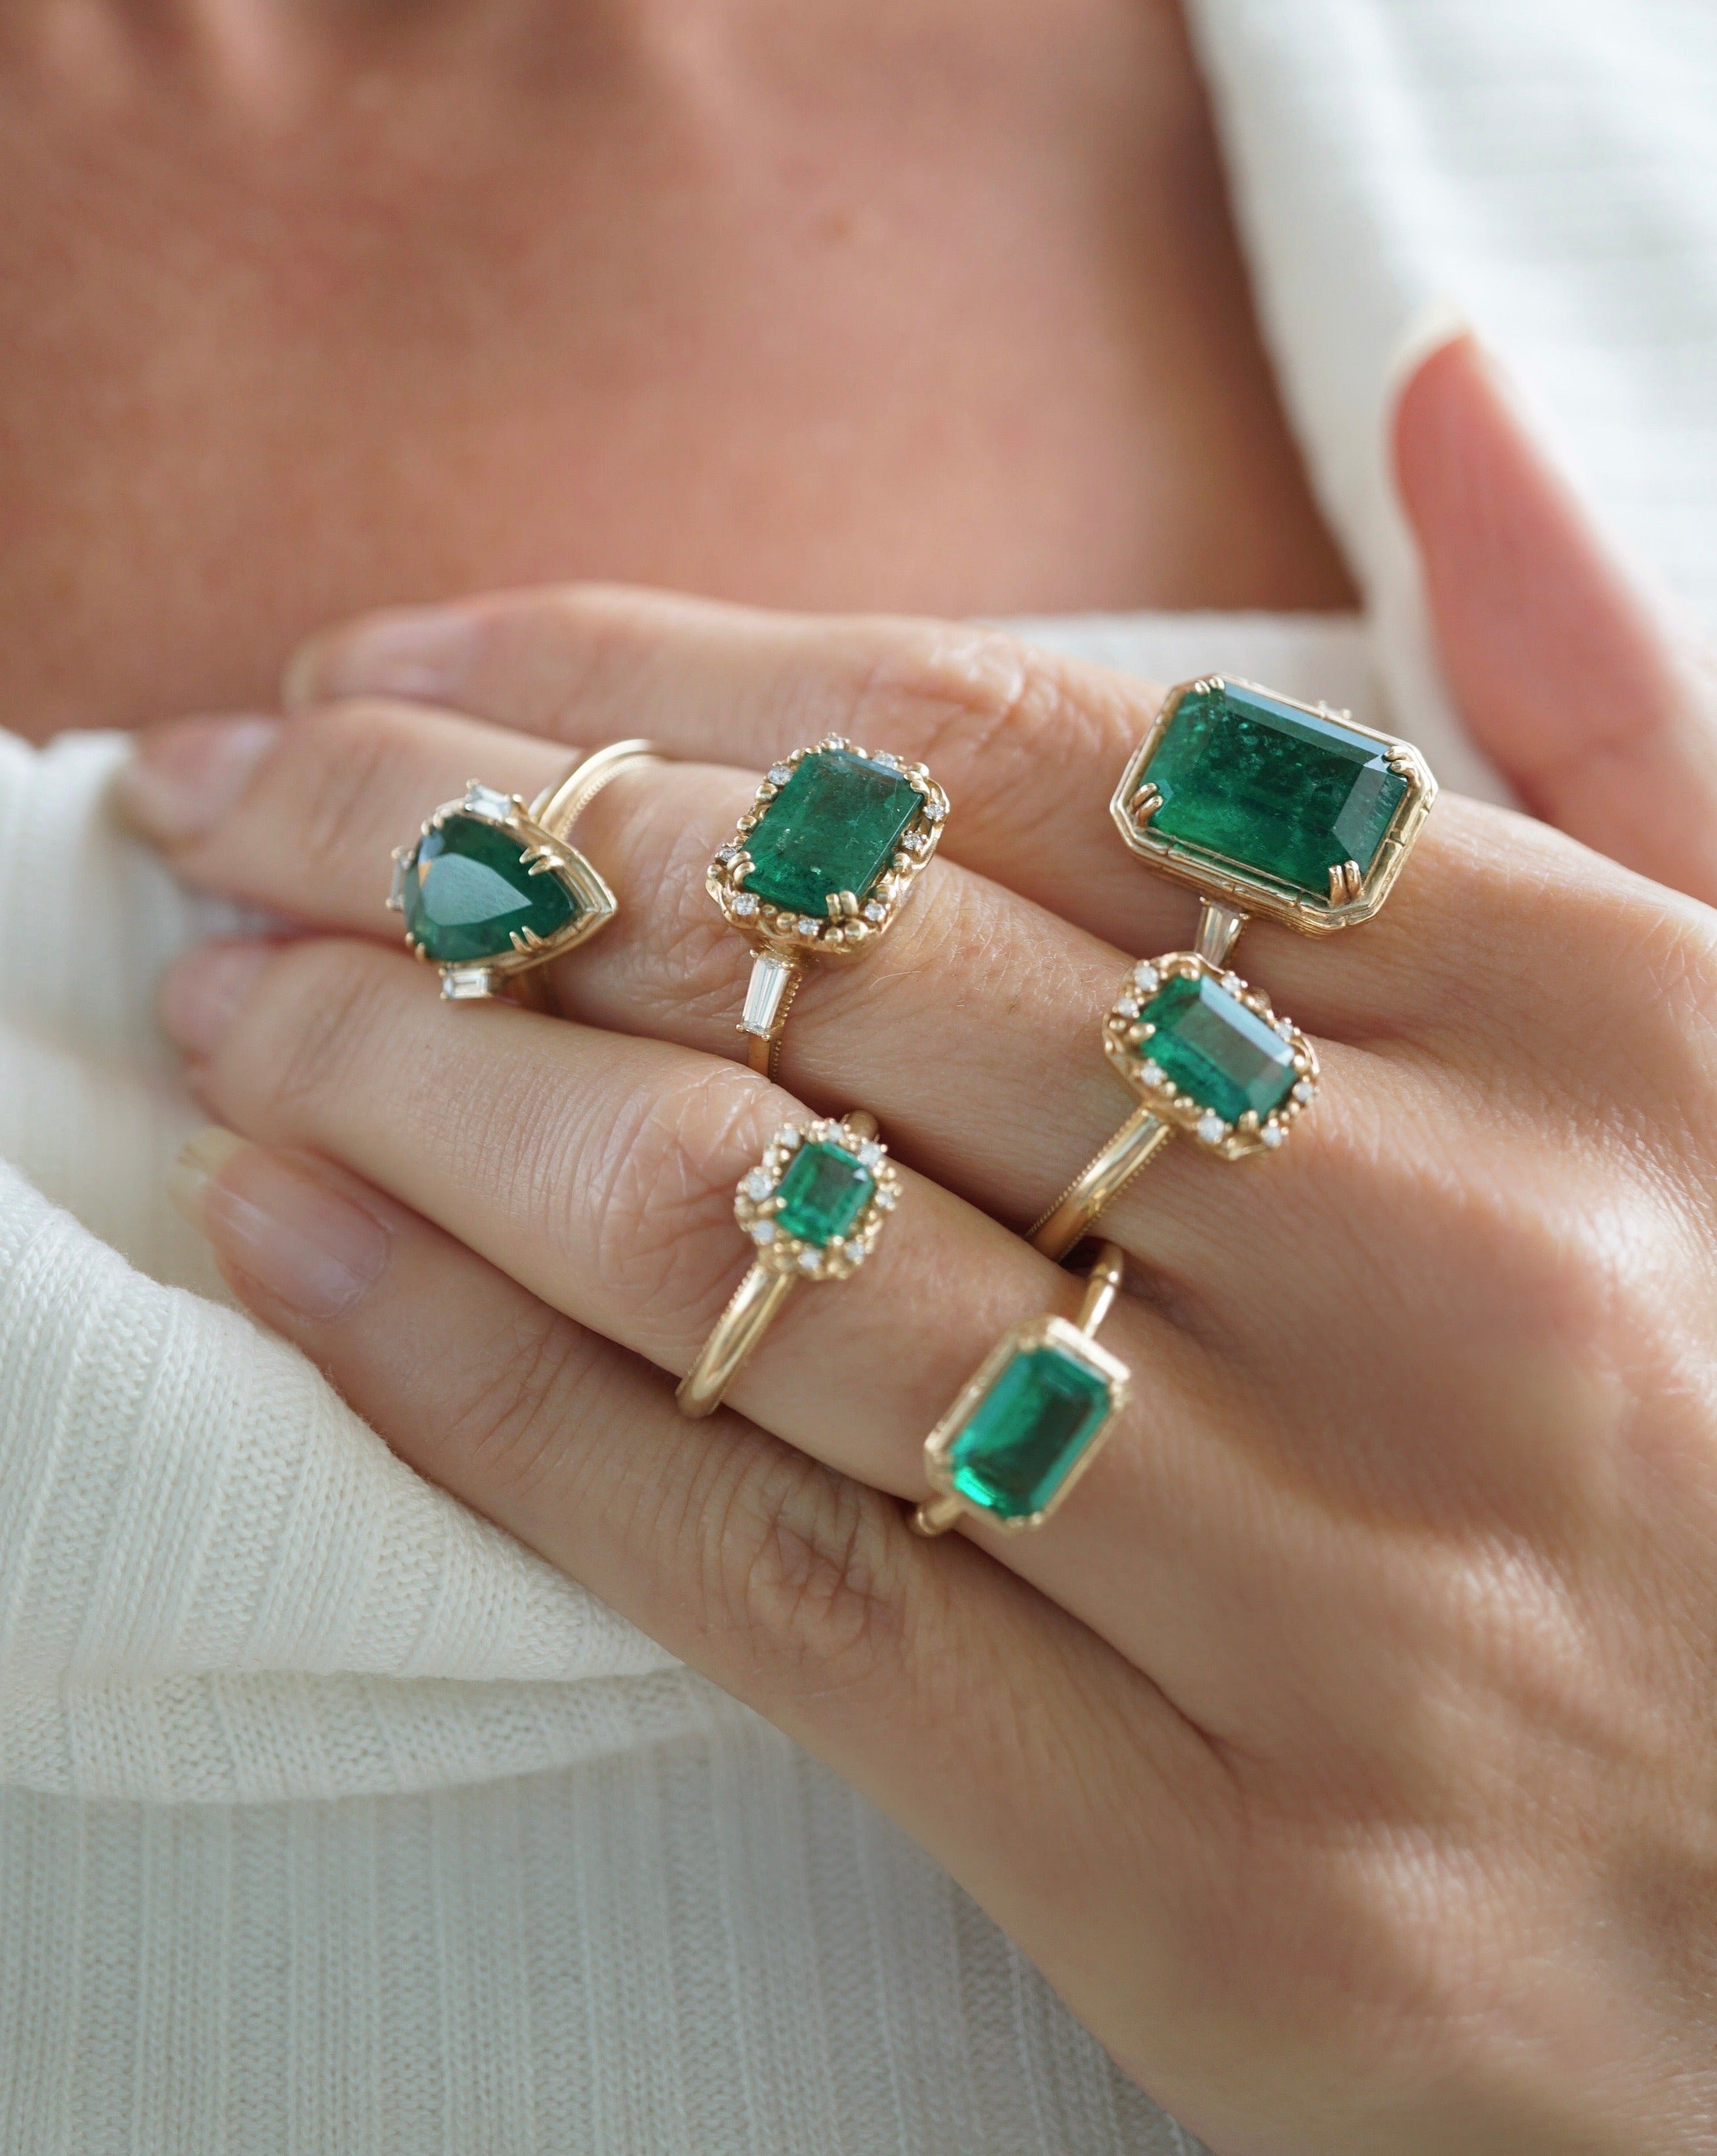 Elegant platinum ring with emerald stone -